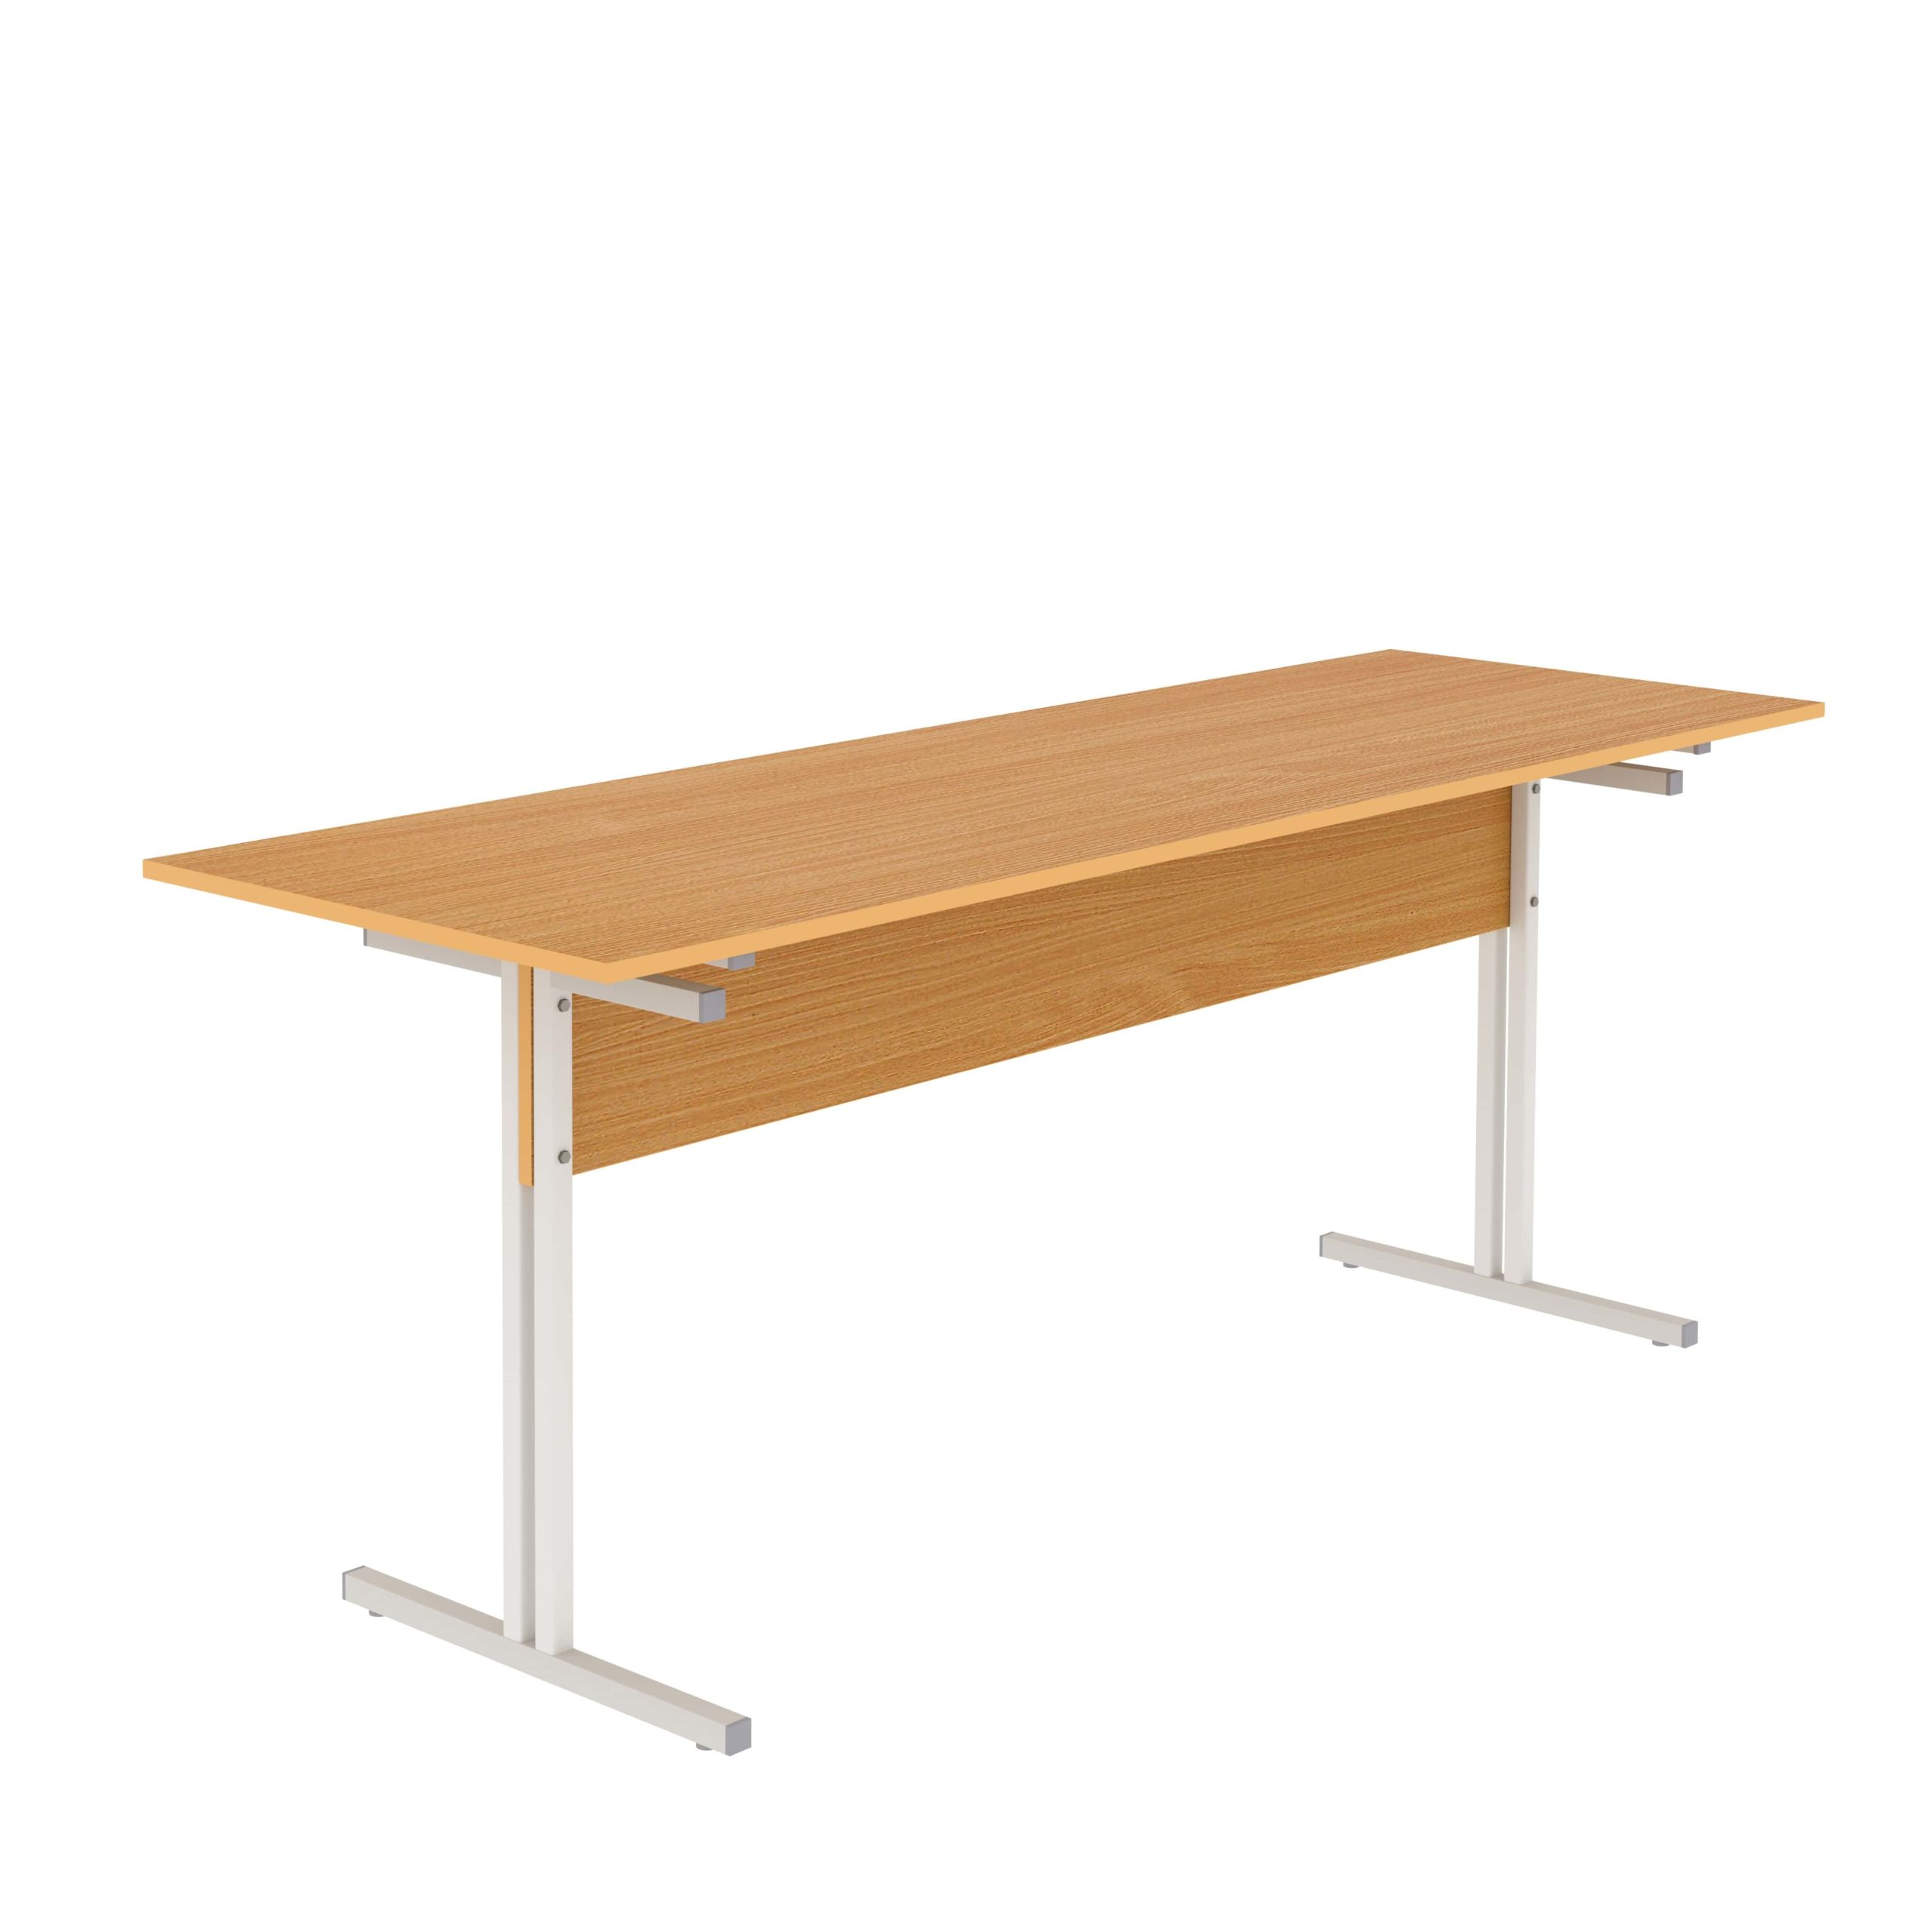 Стол обеденный шестиместный с кронштейном для скамеек для школьной столовой